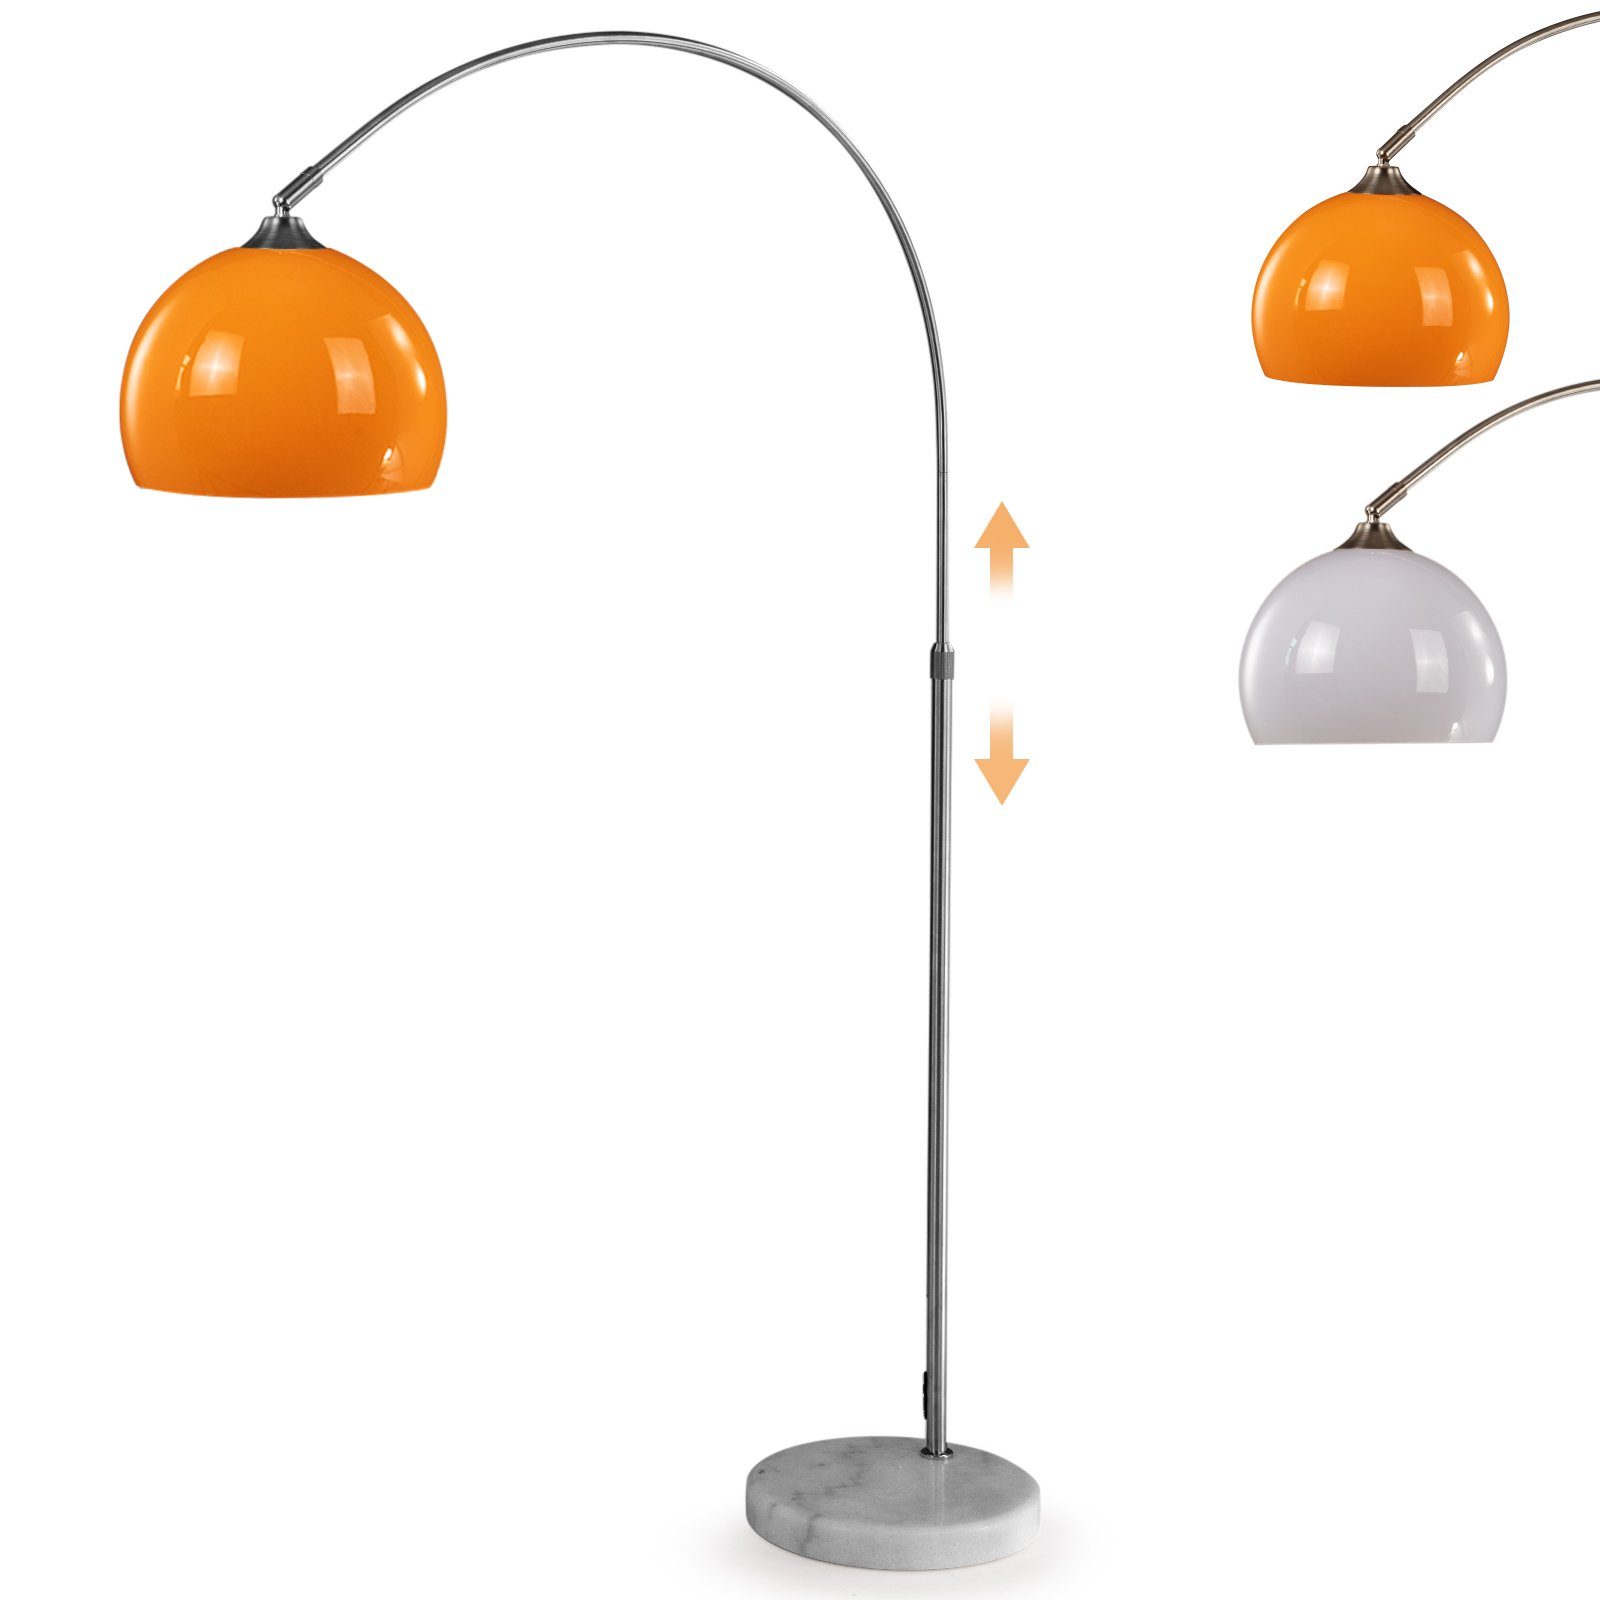 Jago Bogenlampen Bogenleuchte - Höhenverstellbar, 145-220/130-180 cm, max.60W, Farbwahl Orange